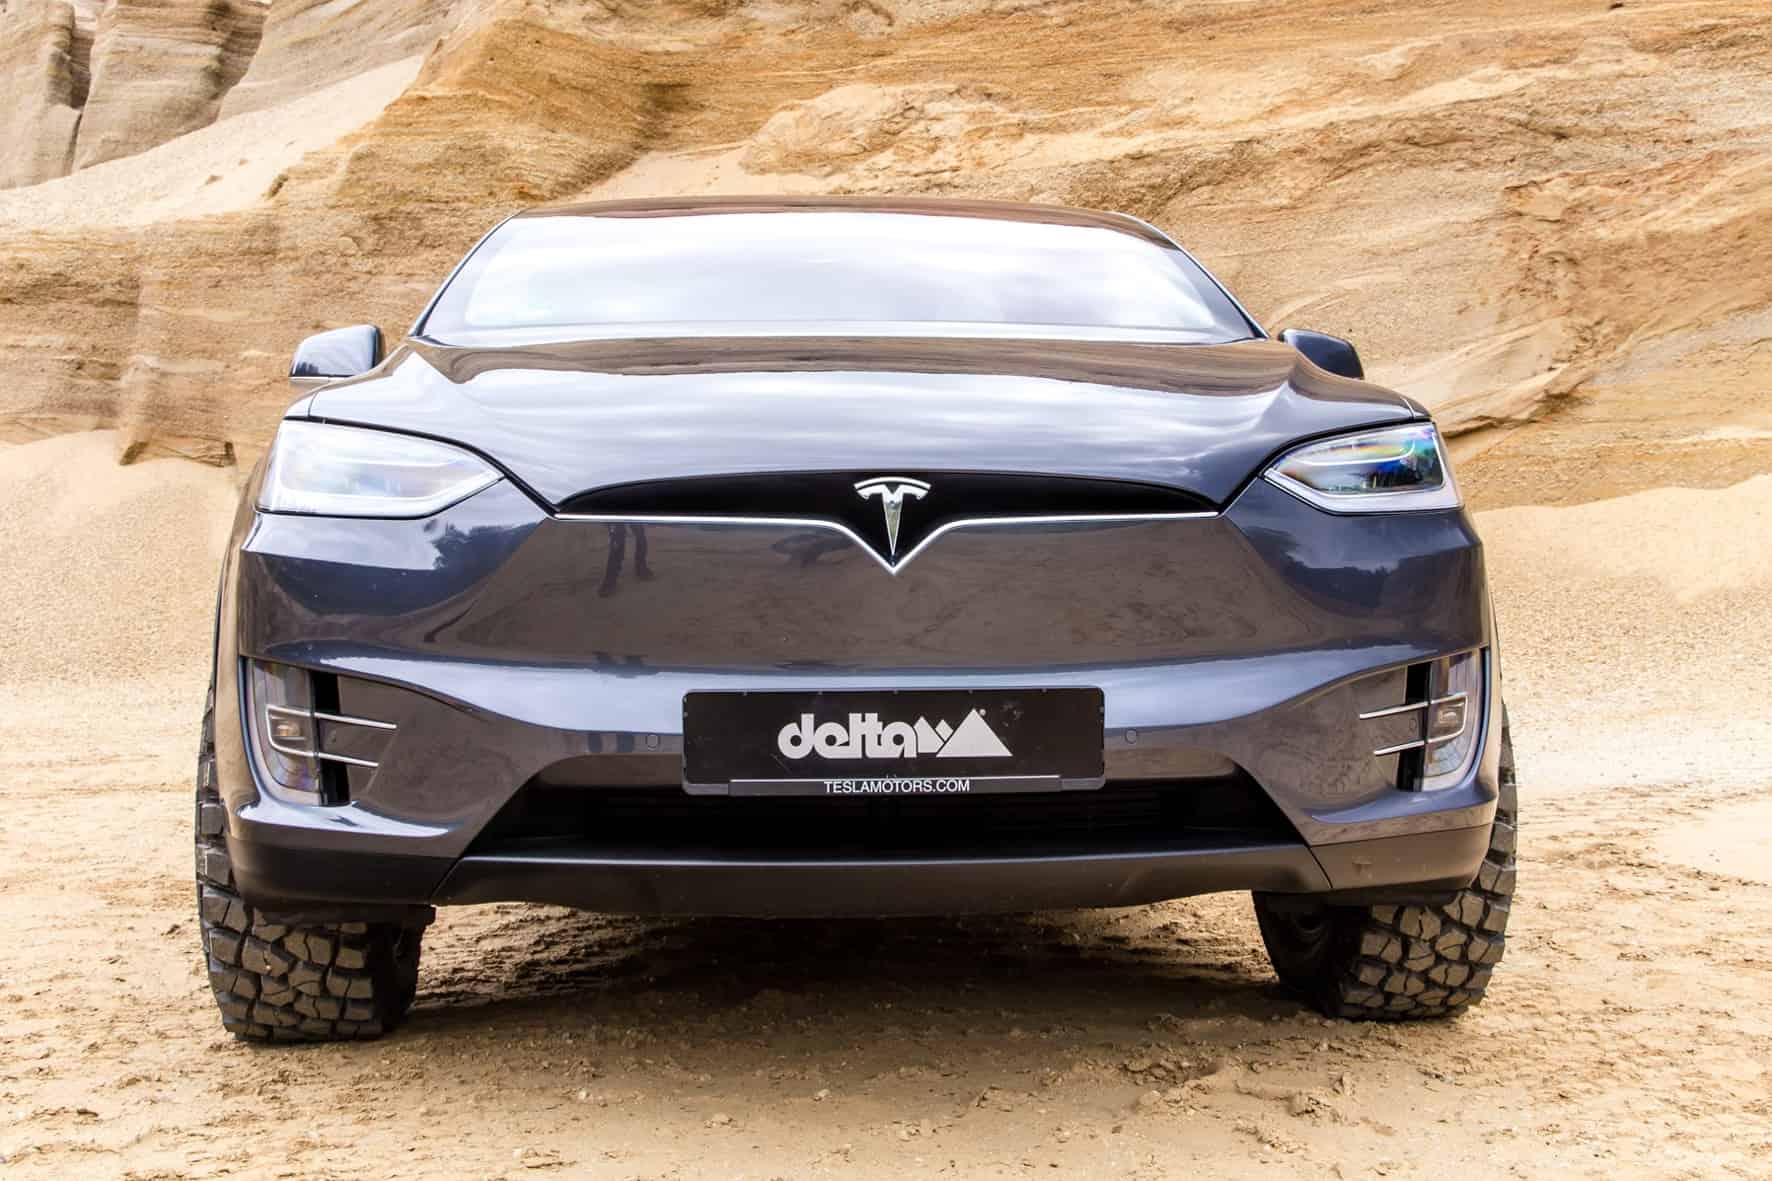 Dank der Spezialbereifung von Delta4x4 hat das Tesla Model X auch auf Kies jede Menge Grip